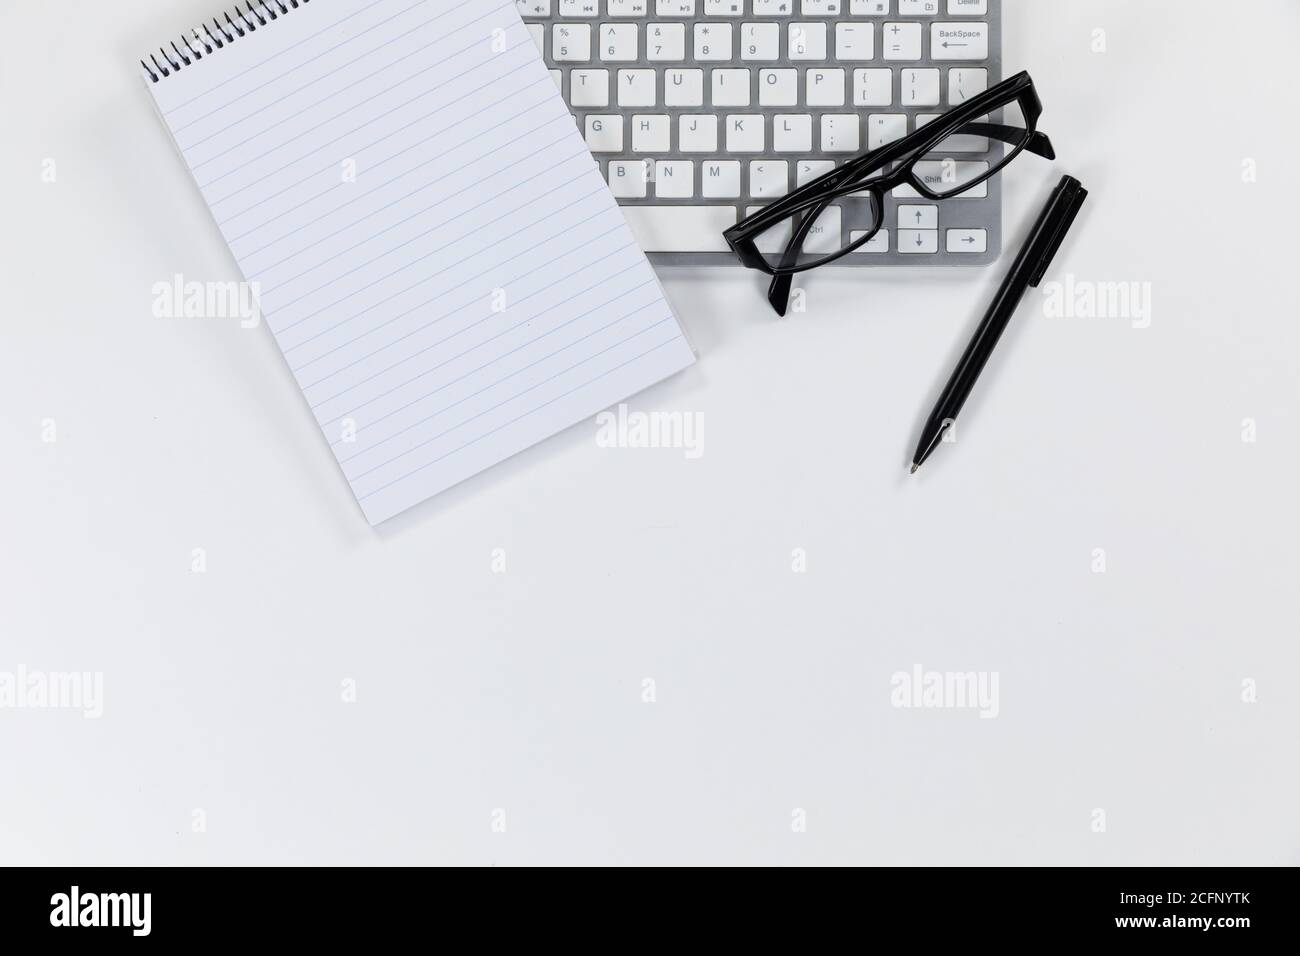 Vista de una palabra clave con un cuaderno y un bolígrafo y gafas sobre fondo blanco Foto de stock